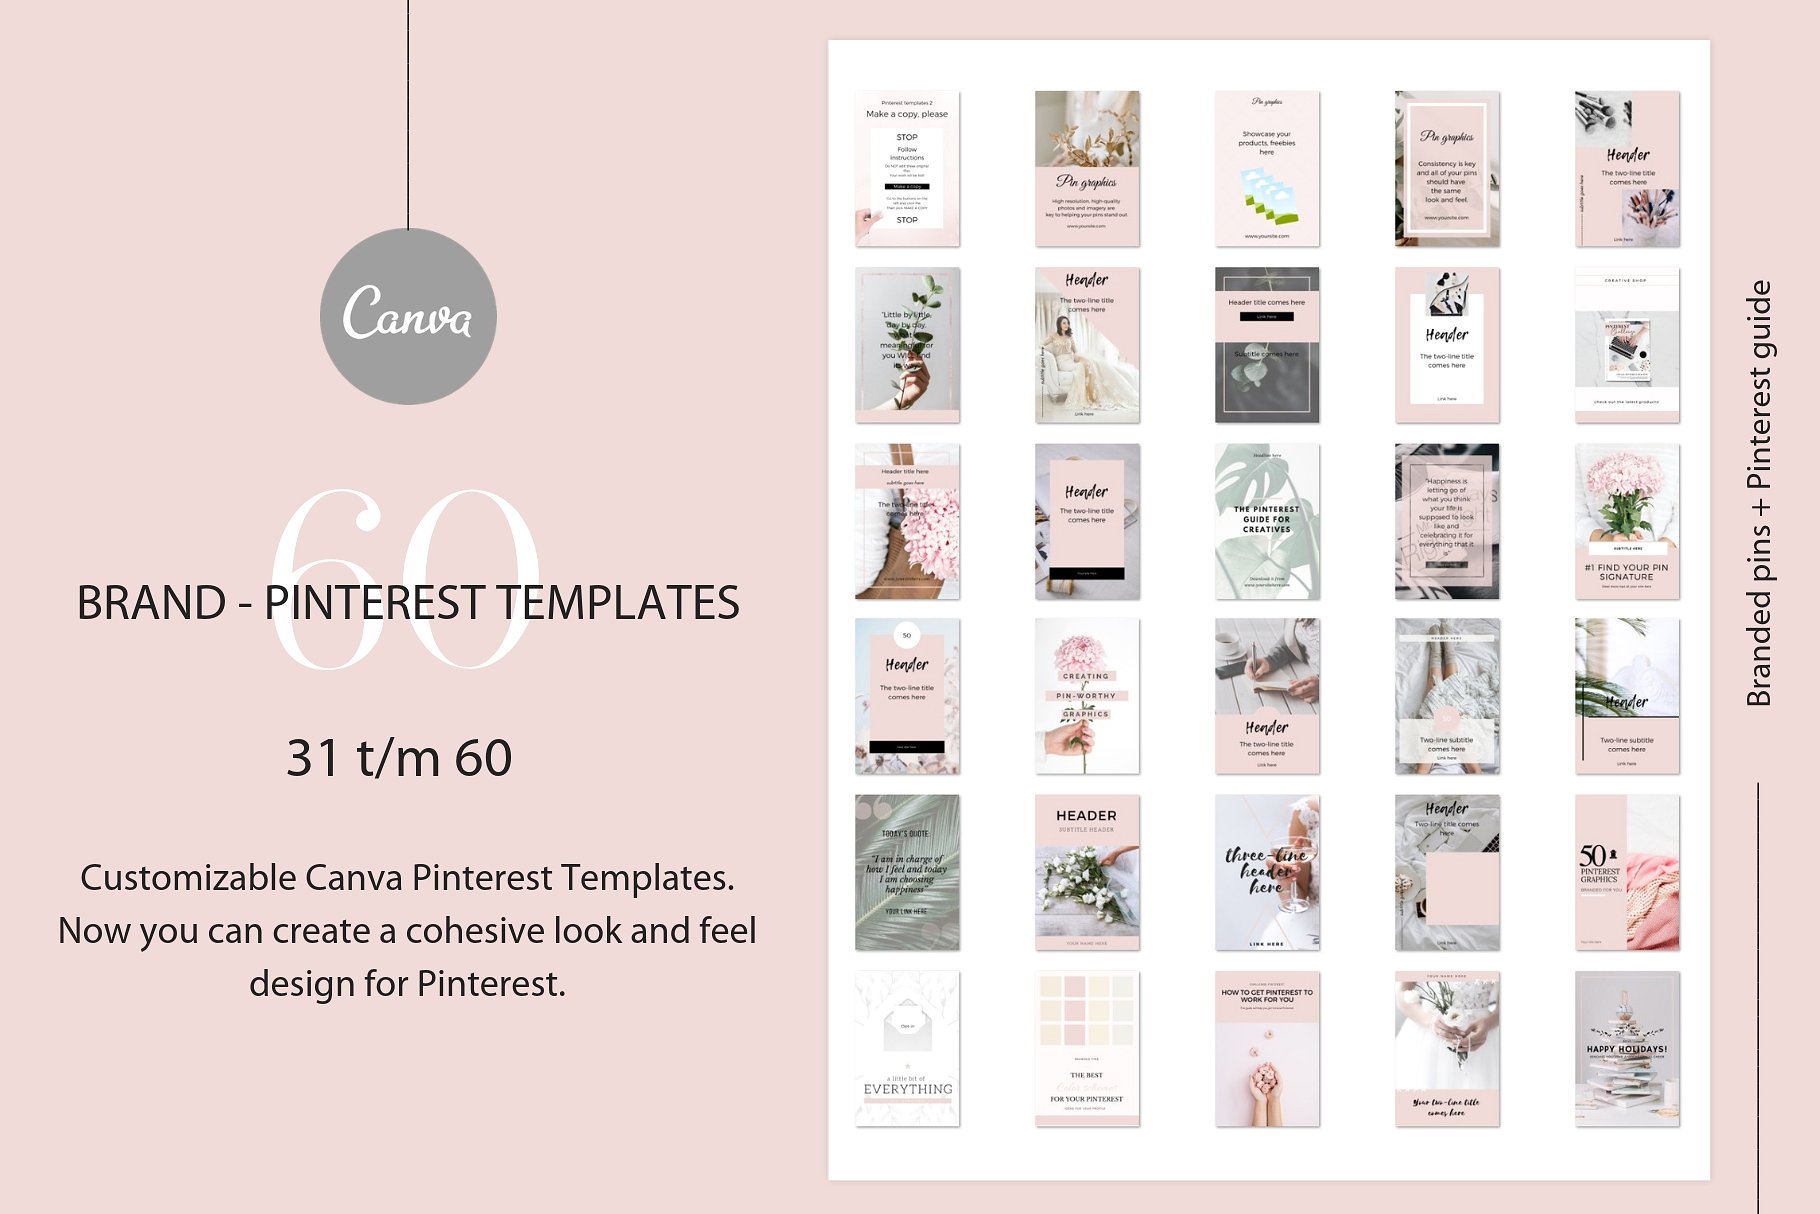 高品质的品牌社交媒体宣传Canva模板第一素材精选 Branded pins + Pinterest guide [jpg,pdf]插图(4)